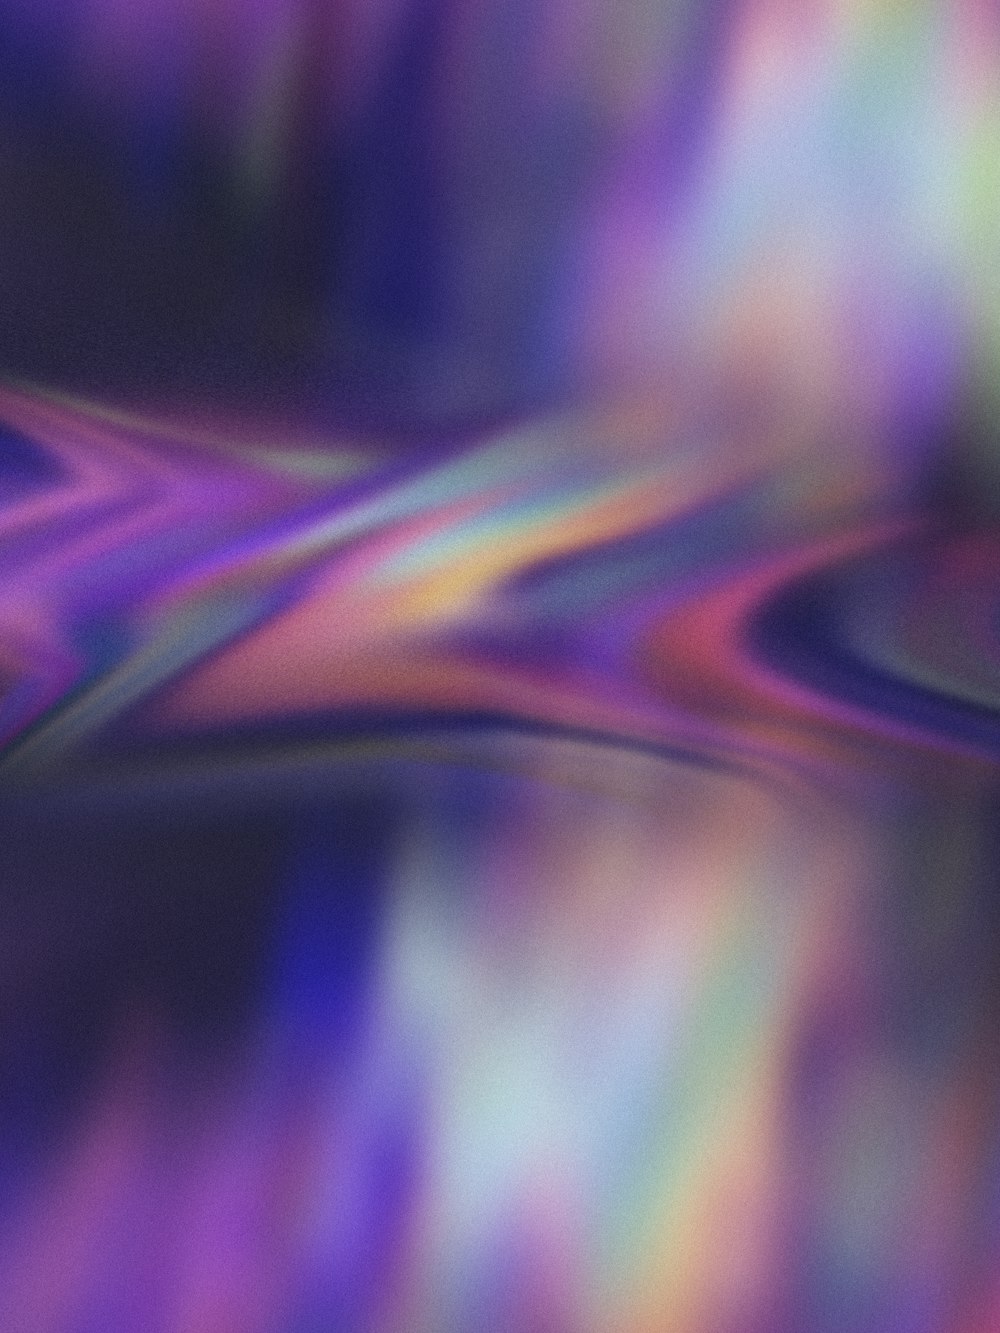 una imagen borrosa de un fondo púrpura y azul